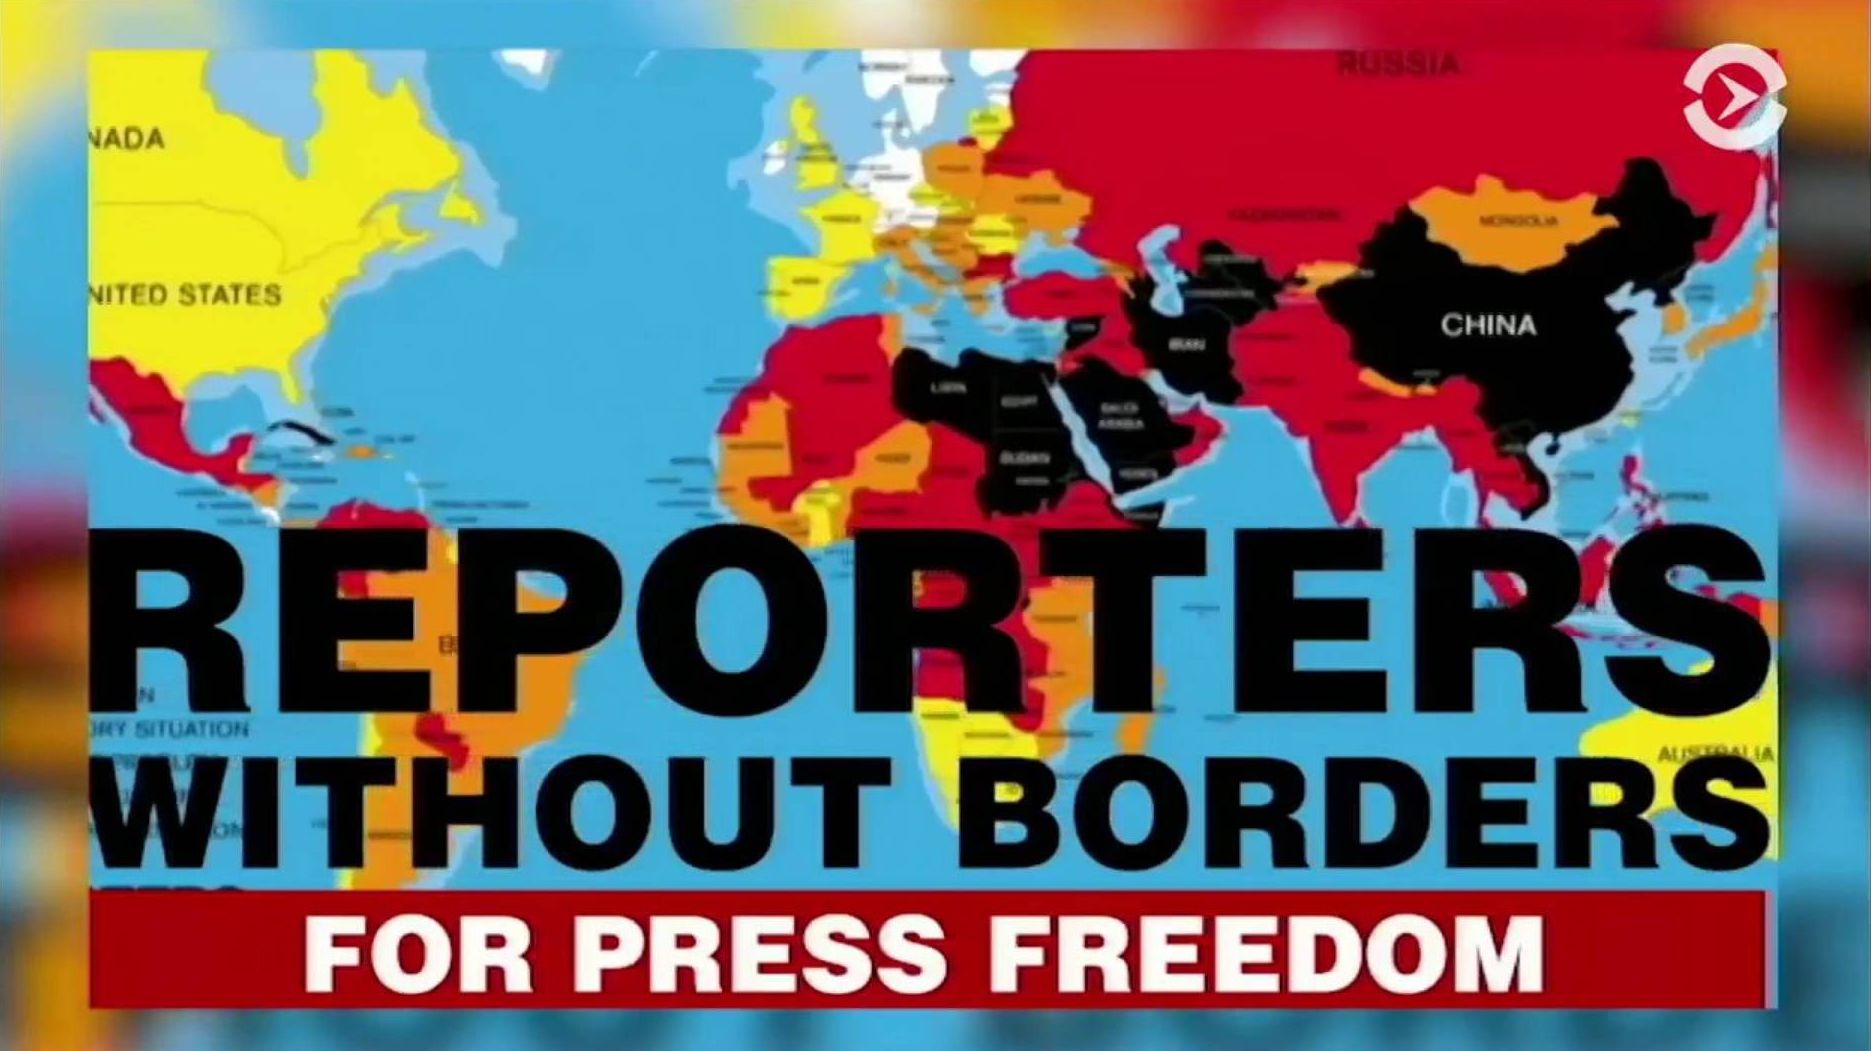 «Репортеры без границ»։ по уровню свободы слова Армения в одной группе с Грузией, Польшей и Хорватией